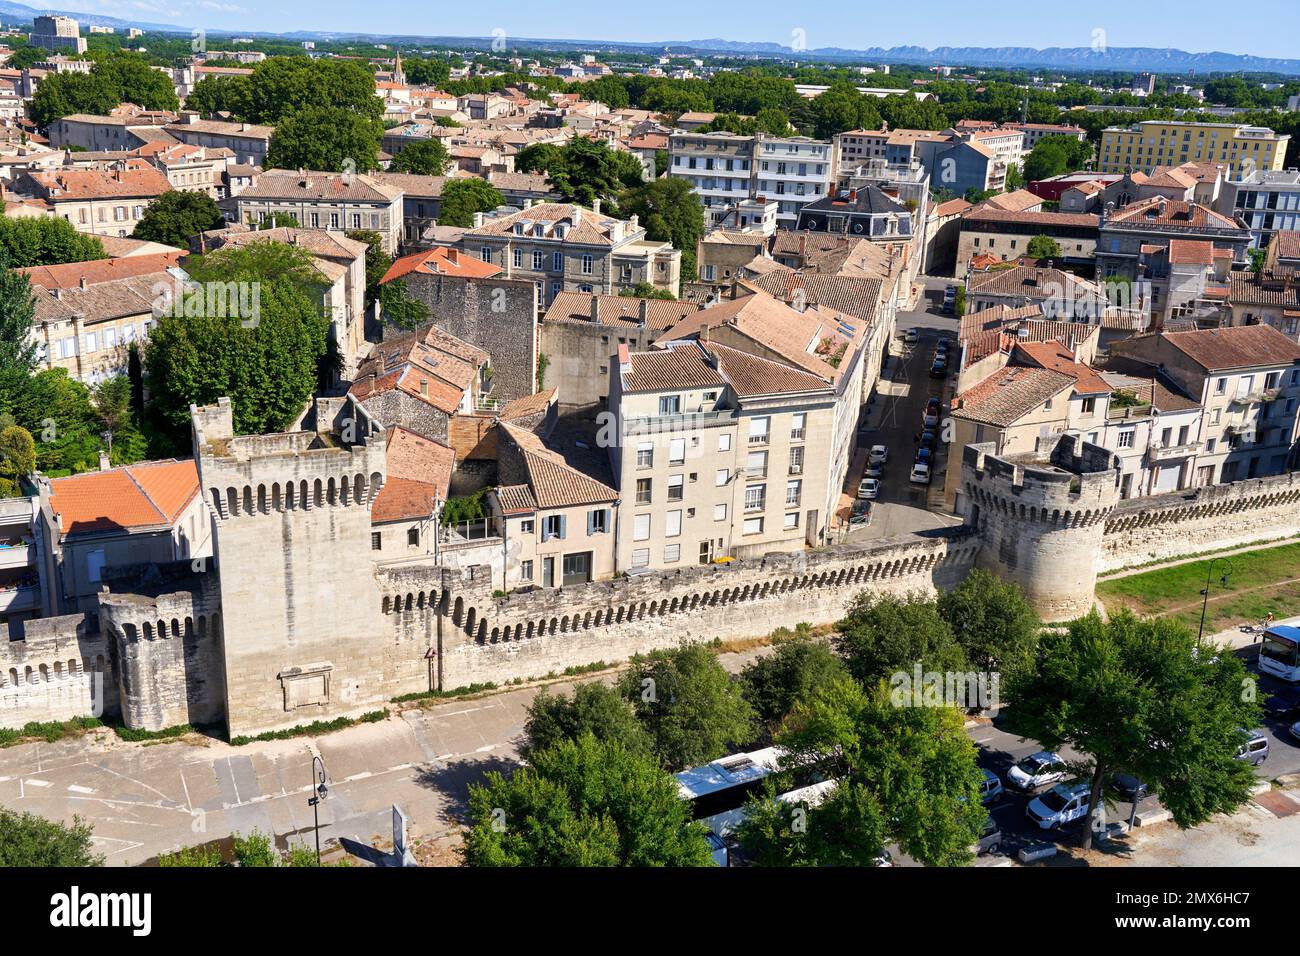 Centro storico, Muro medievale, Avignone, Vaucluse, Provenza-Alpi-Côte Azzurra, Francia, Europa. Il centro storico di Avignone offre un gran numero Foto Stock